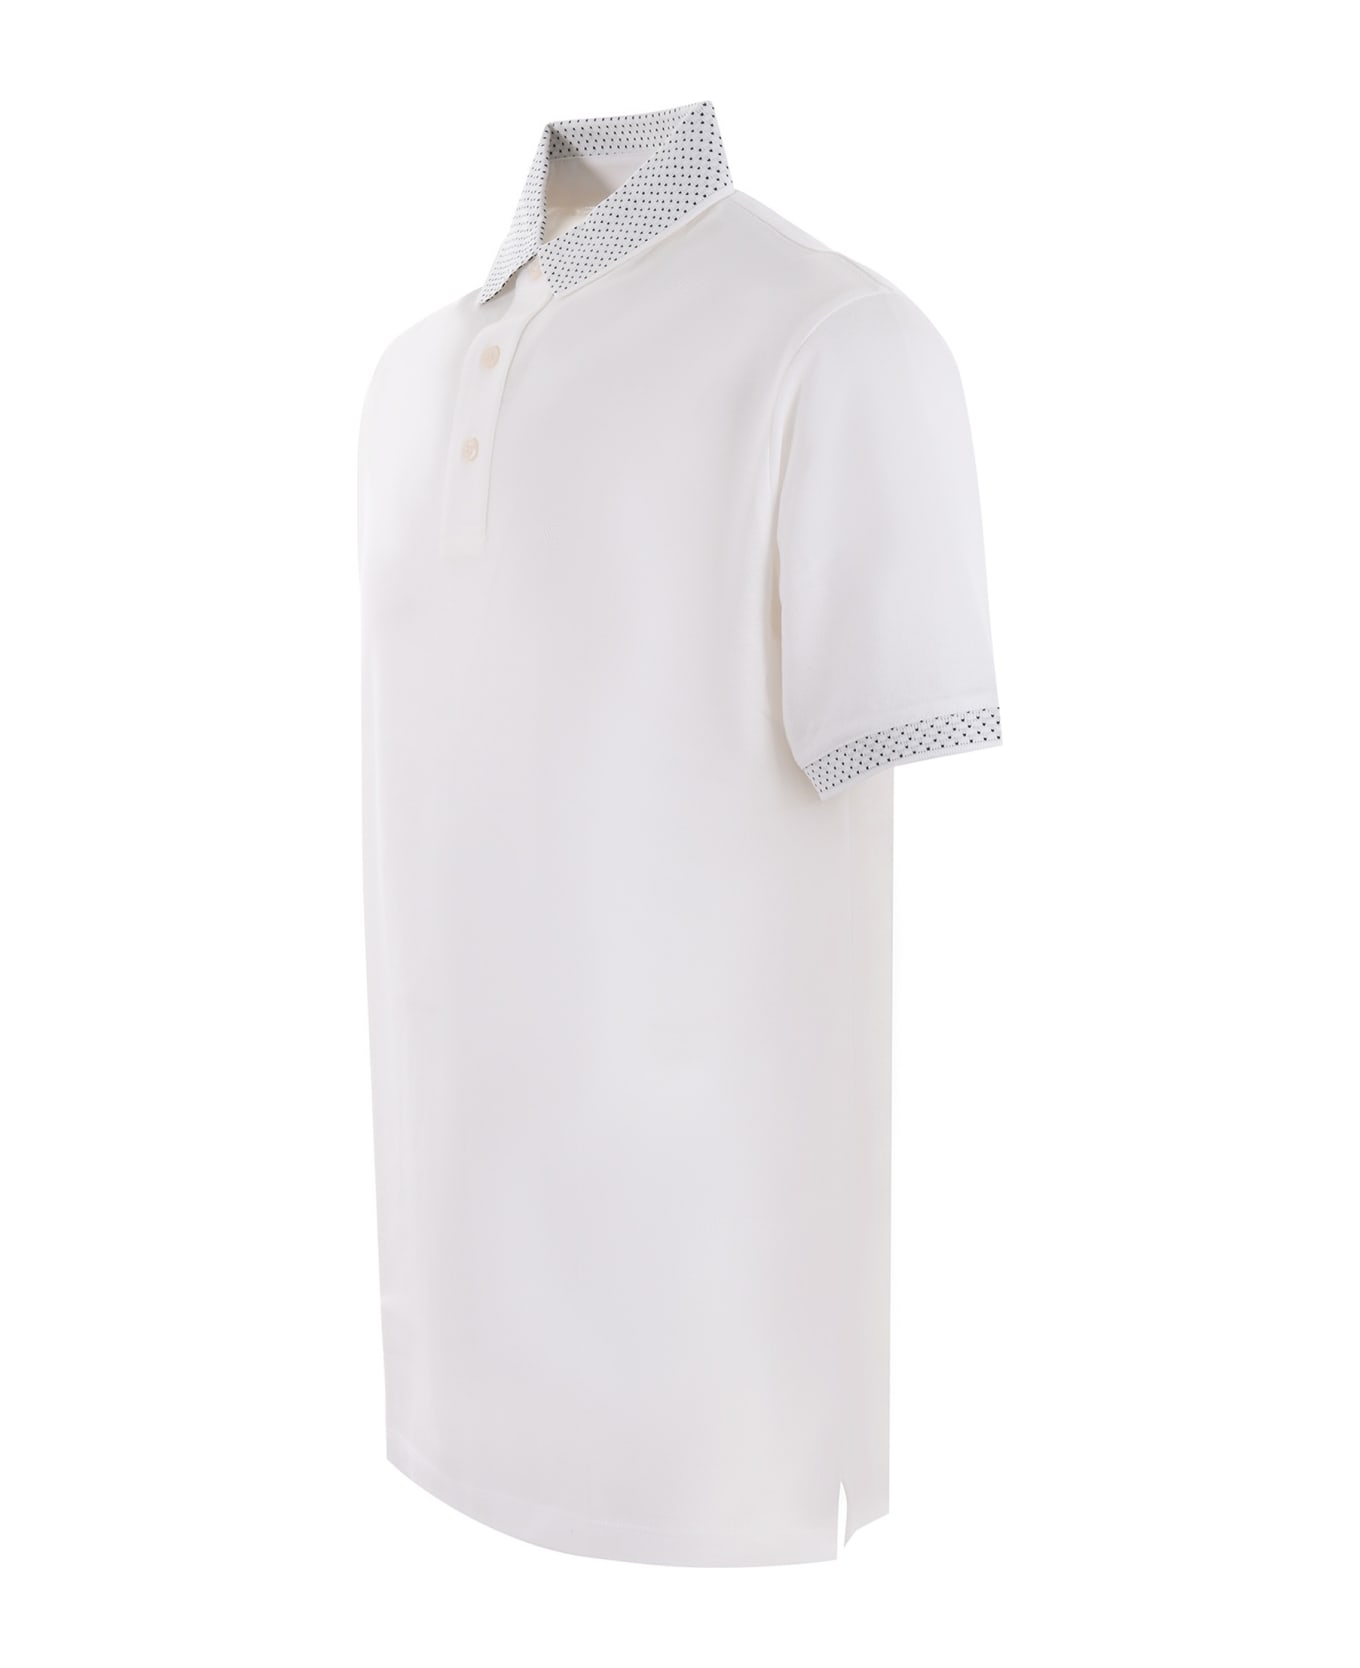 Emporio Armani Polo Shirt - Bianco